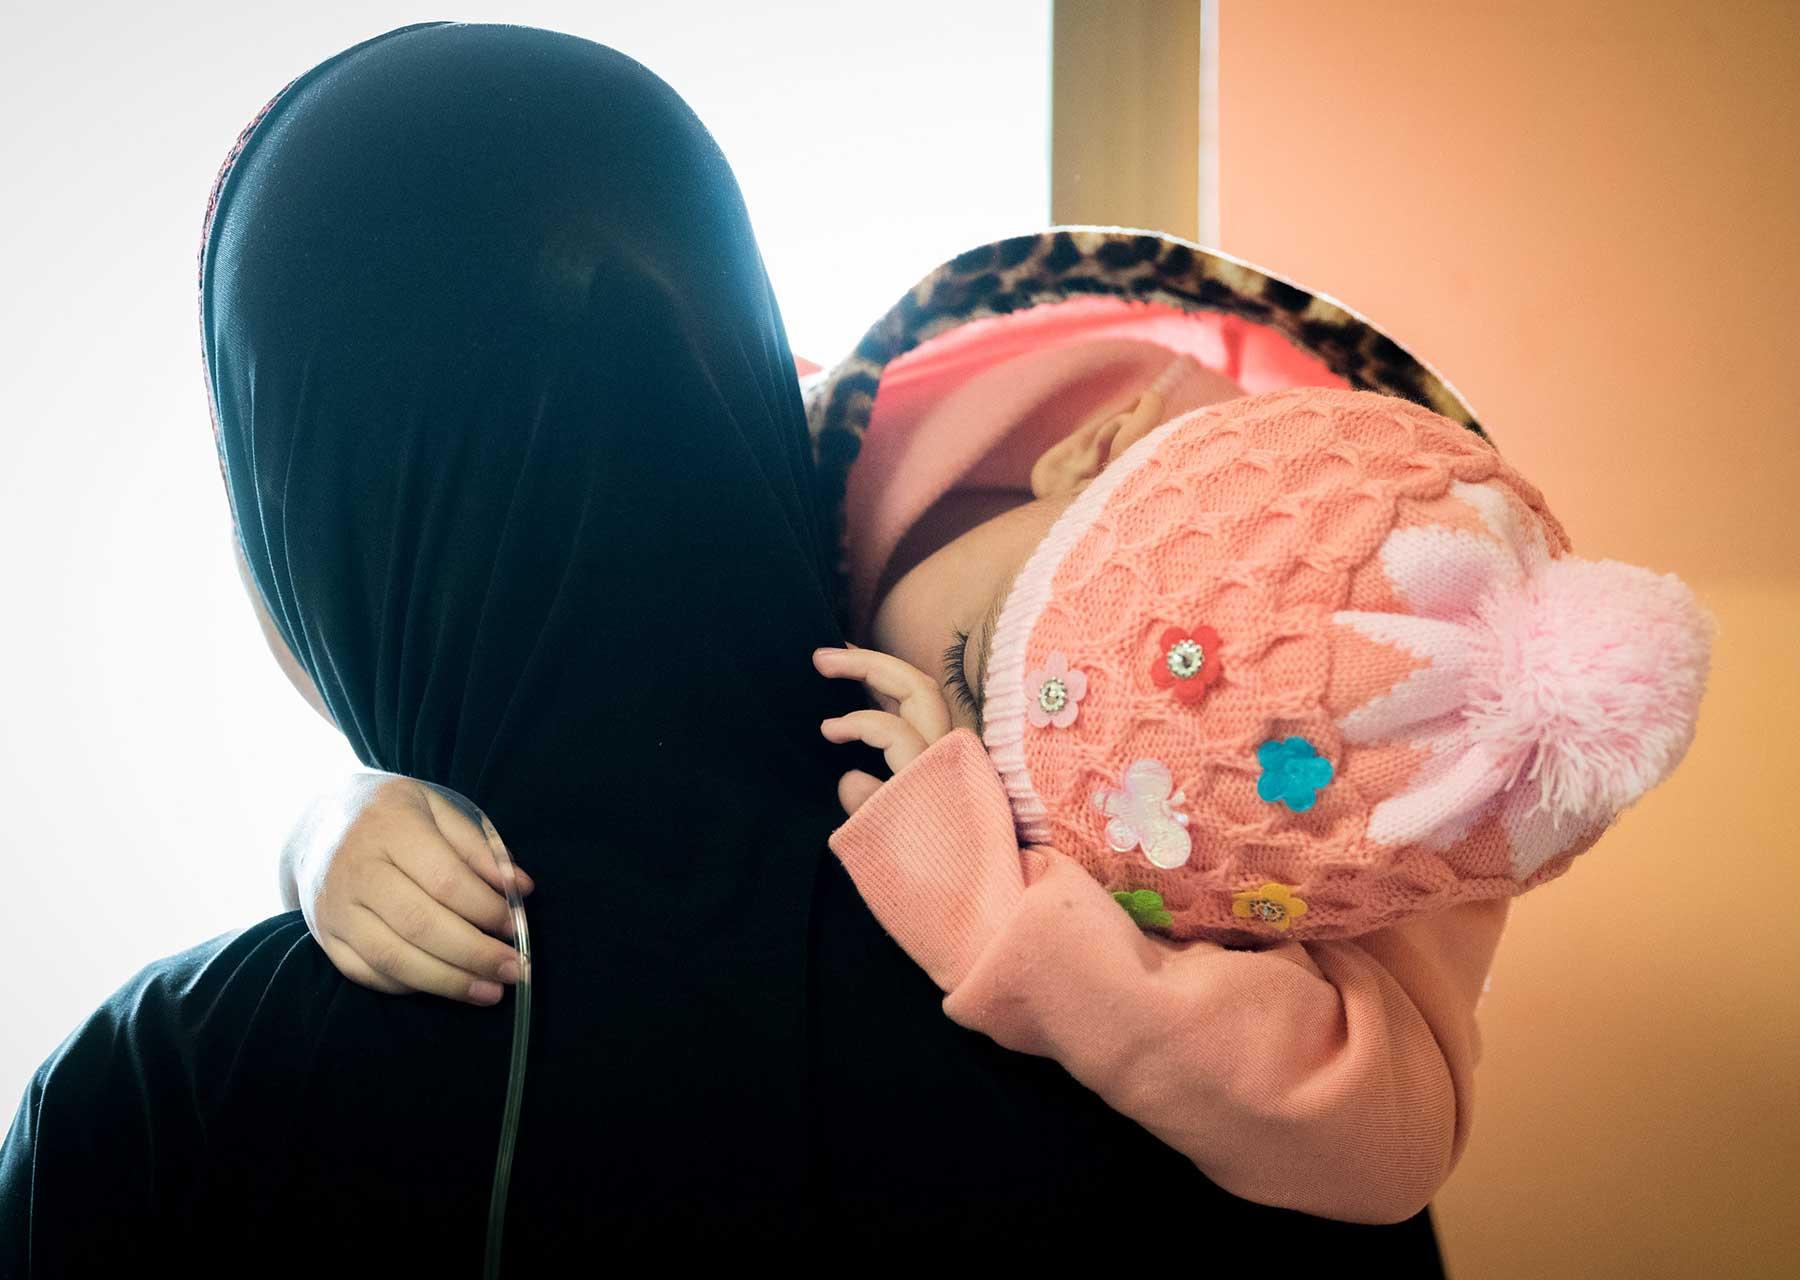 Eine vierjährige Krebspatientin aus Gaza im AVH, zusammen mit ihrer Mutter. Das Mädchen wurde wegen eines Gehirntumors behandelt